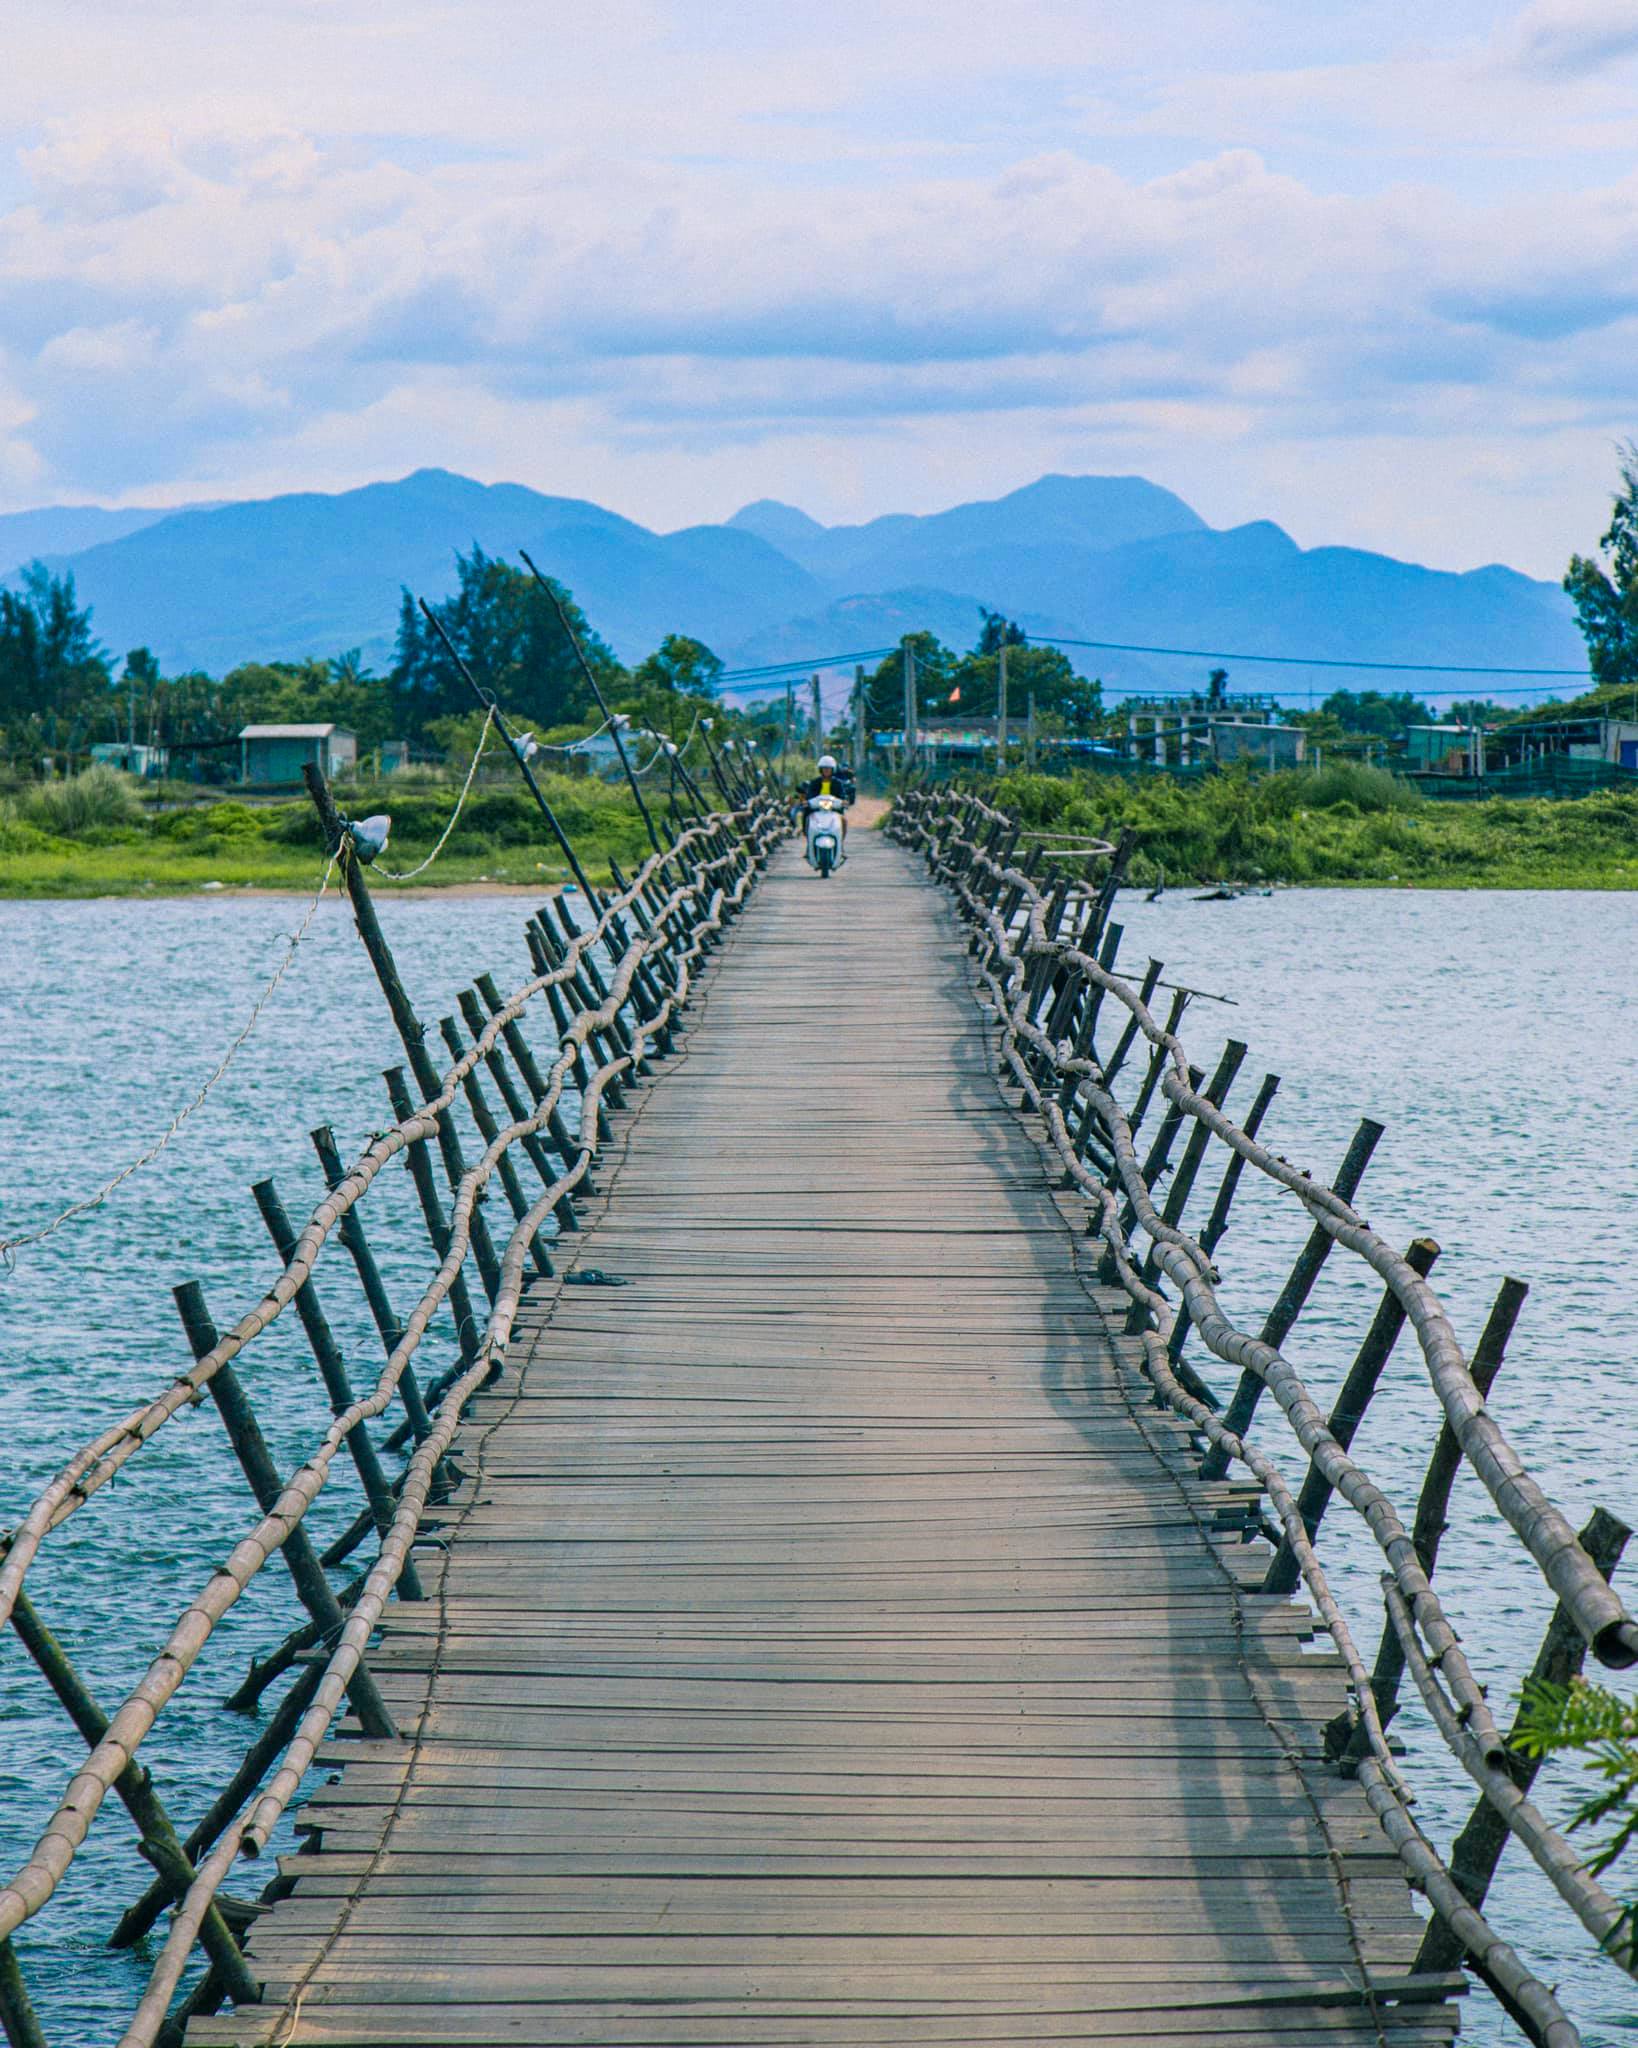 Việt Nam có thiên nhiên đẹp tựa như bức tranh vẽ bởi chính thiên nhiên. Những dòng sông, những đồi núi, những bãi biển đều tuyệt đẹp đến kì diệu. Hãy xem hình ảnh và cùng chúng tôi ngắm nhìn vẻ đẹp tuyệt vời của quê hương.